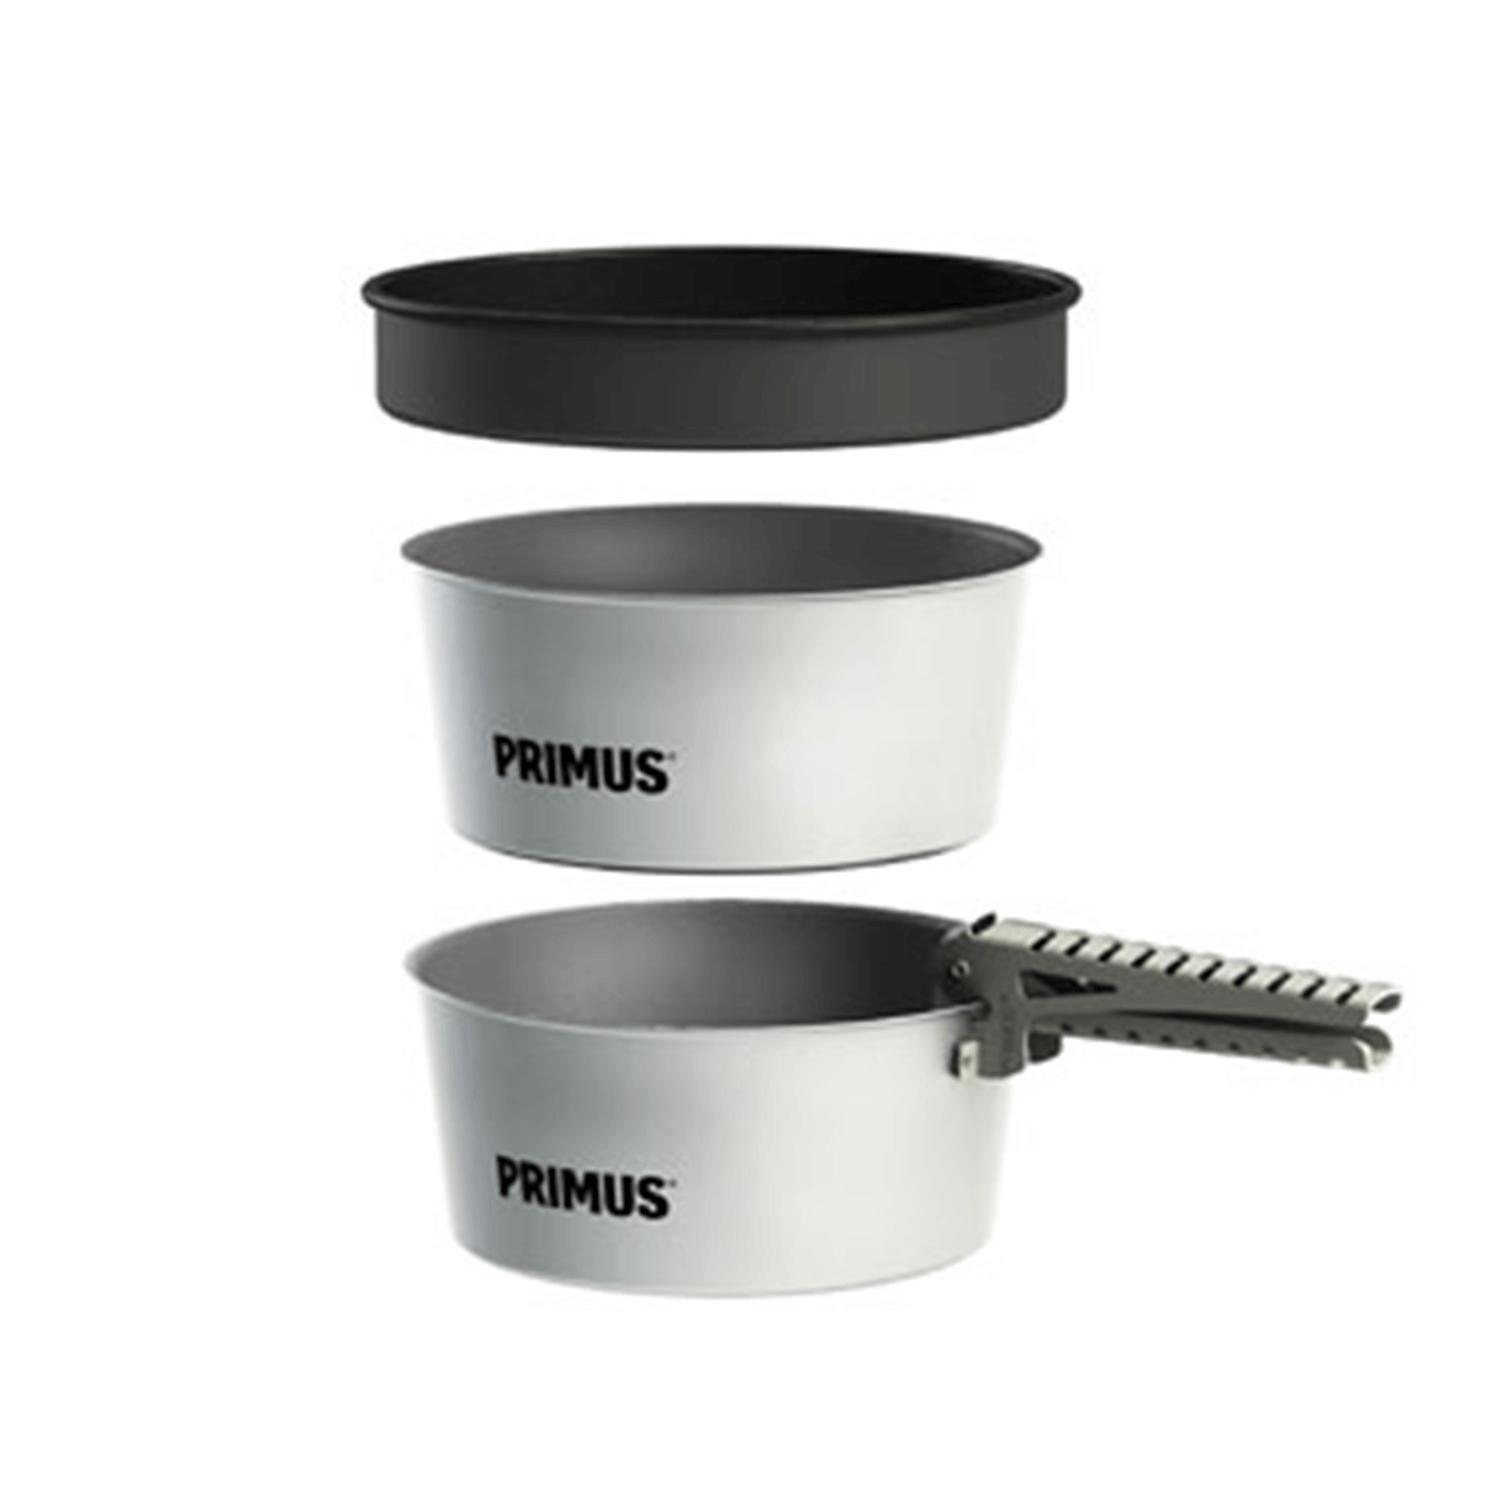 Primus Potset Essentials 2x1,3L - Primus